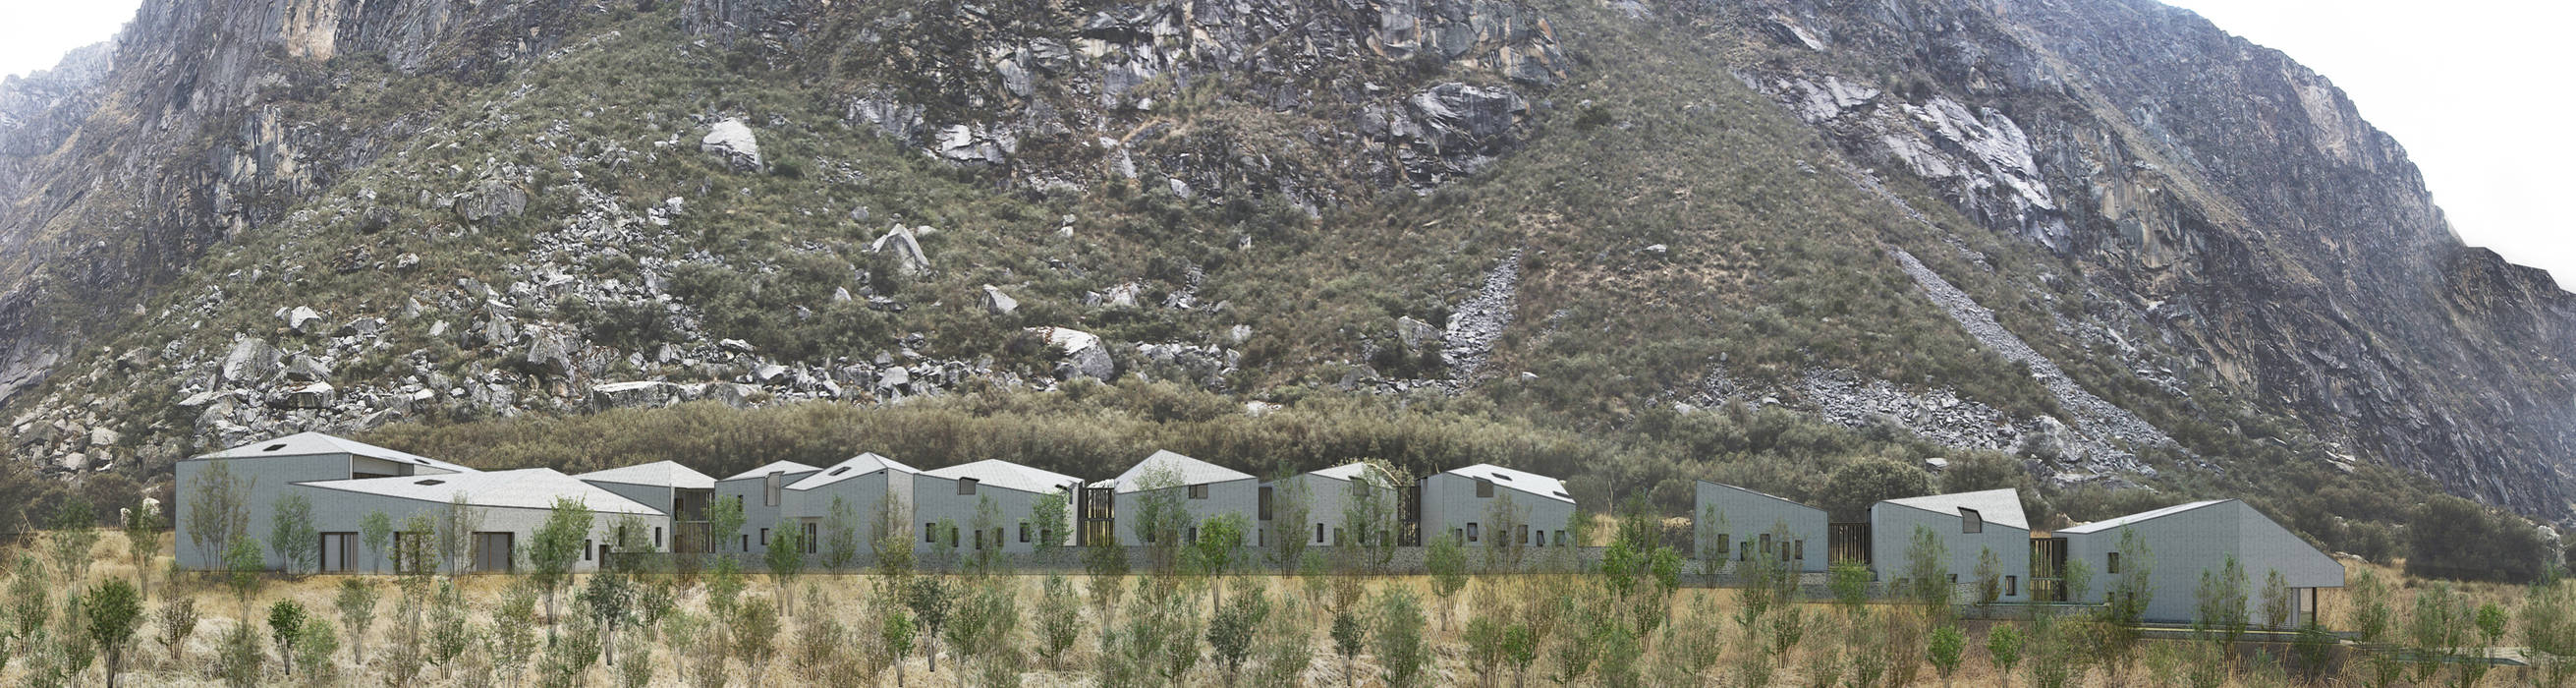 Centro de Investigación Vegetal, Quilcayhuanca Huaraz, Ctrl+ Ctrl+ Moderne Häuser